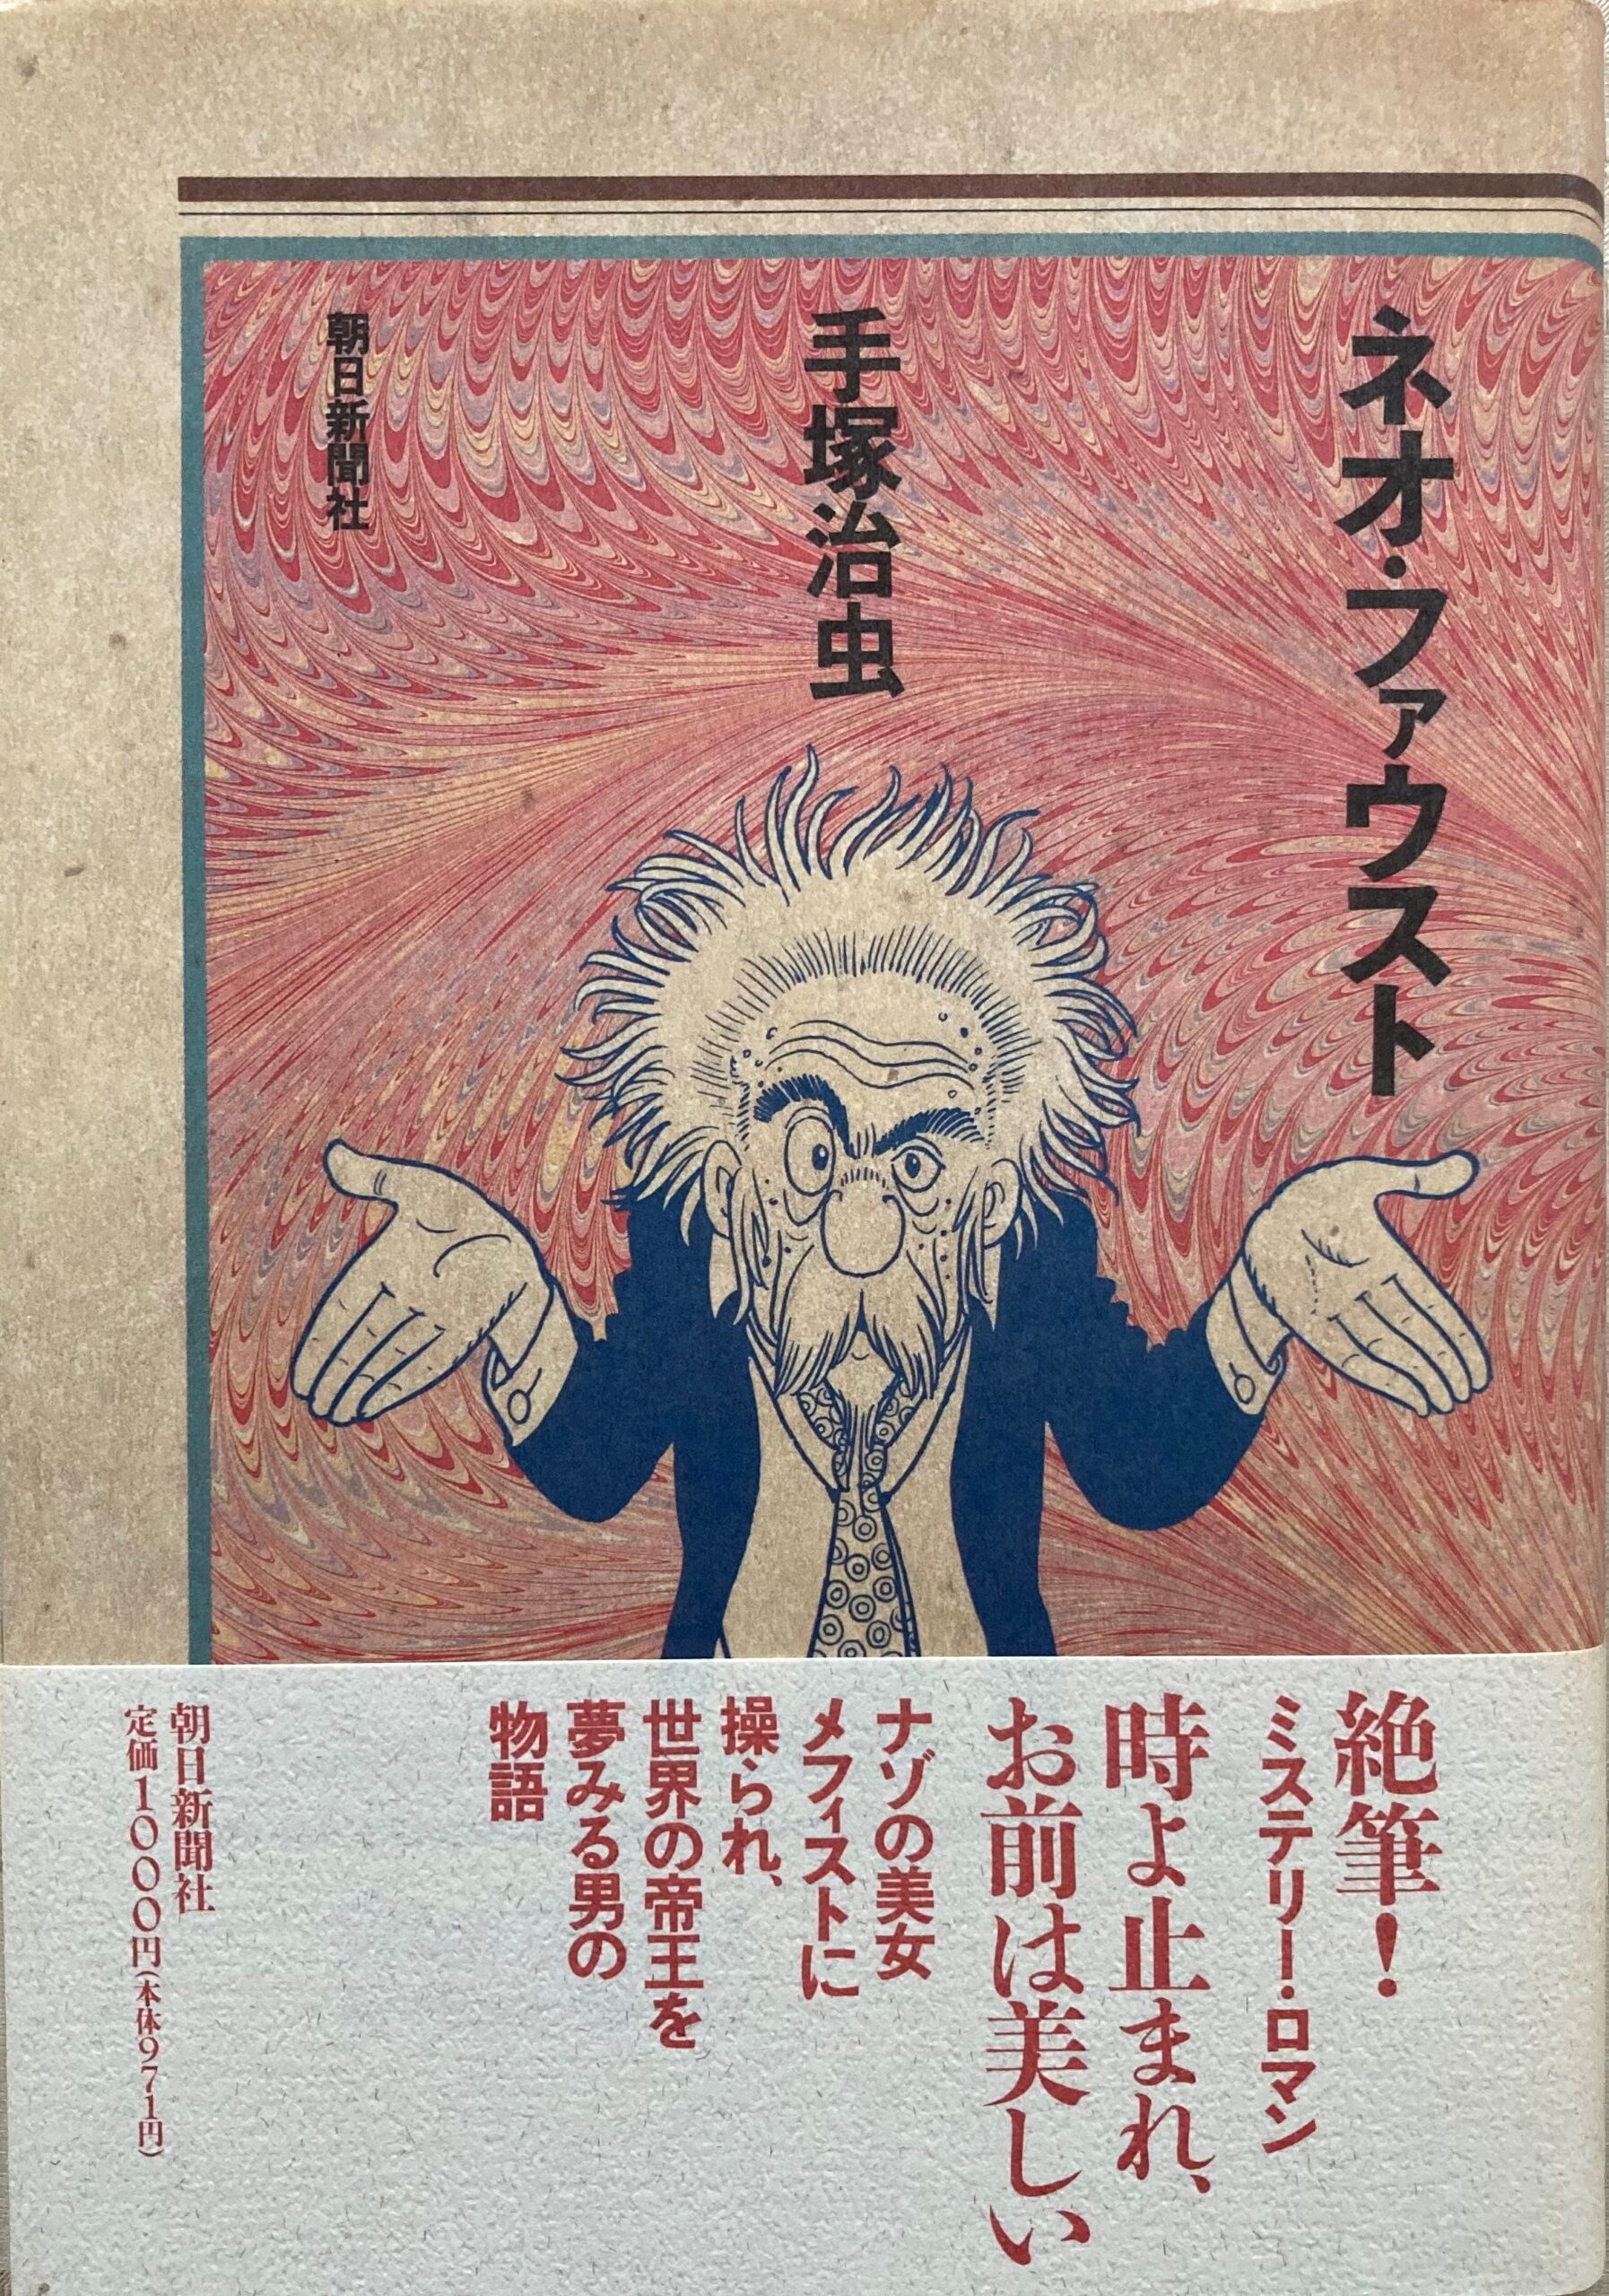 最初に出版された「ネオ・ファウスト」のハードカバー本の表紙の写真。朝日出版社刊。